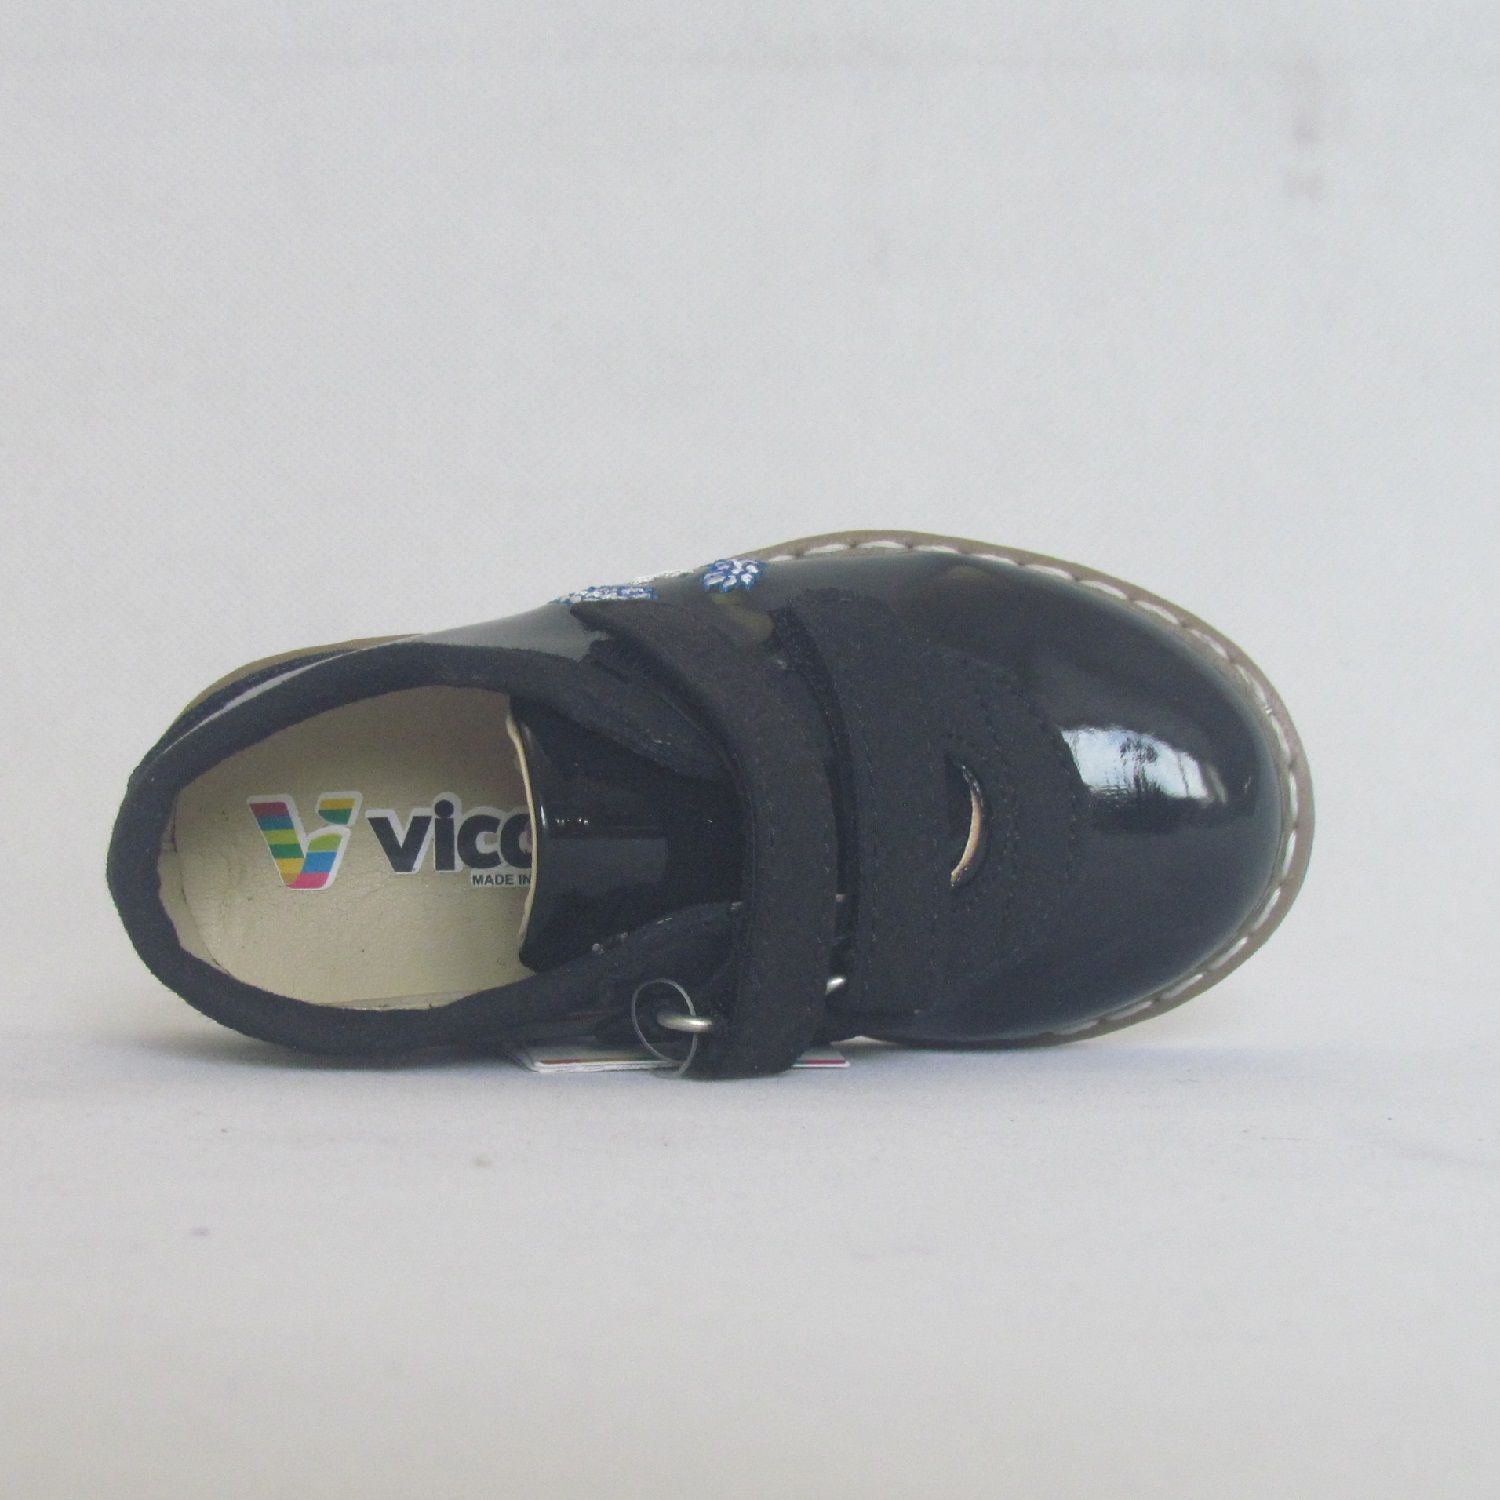 کفش پسرانه ویکو مدل 950.475 -  - 6